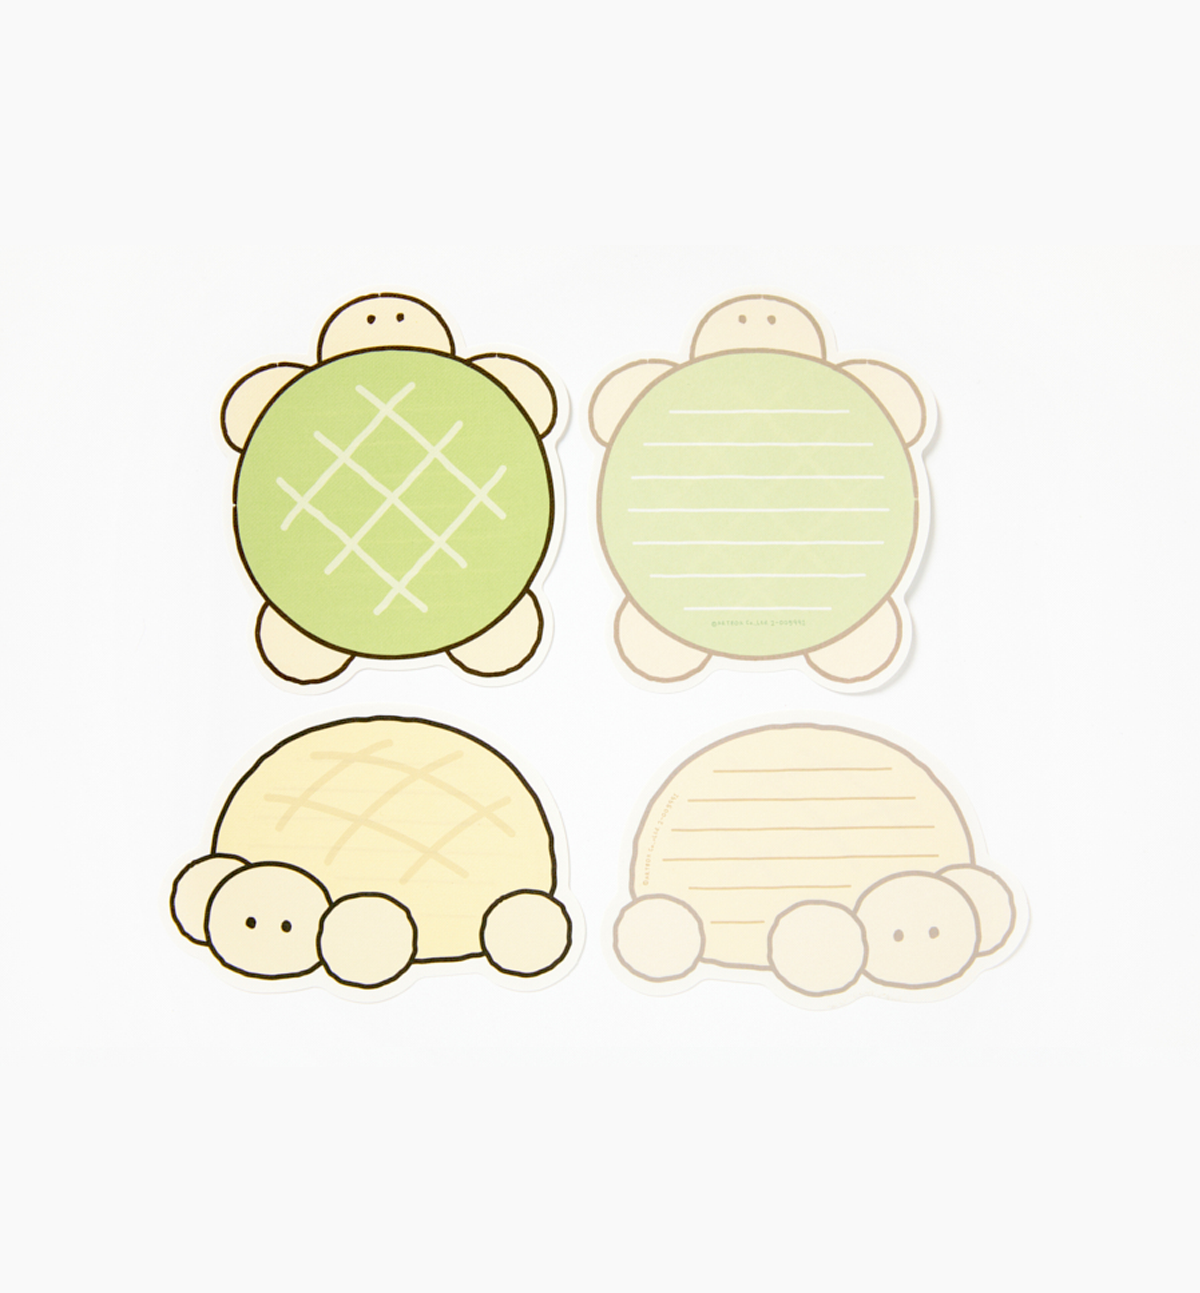 Cute Turtle Letters & Envelopes Set